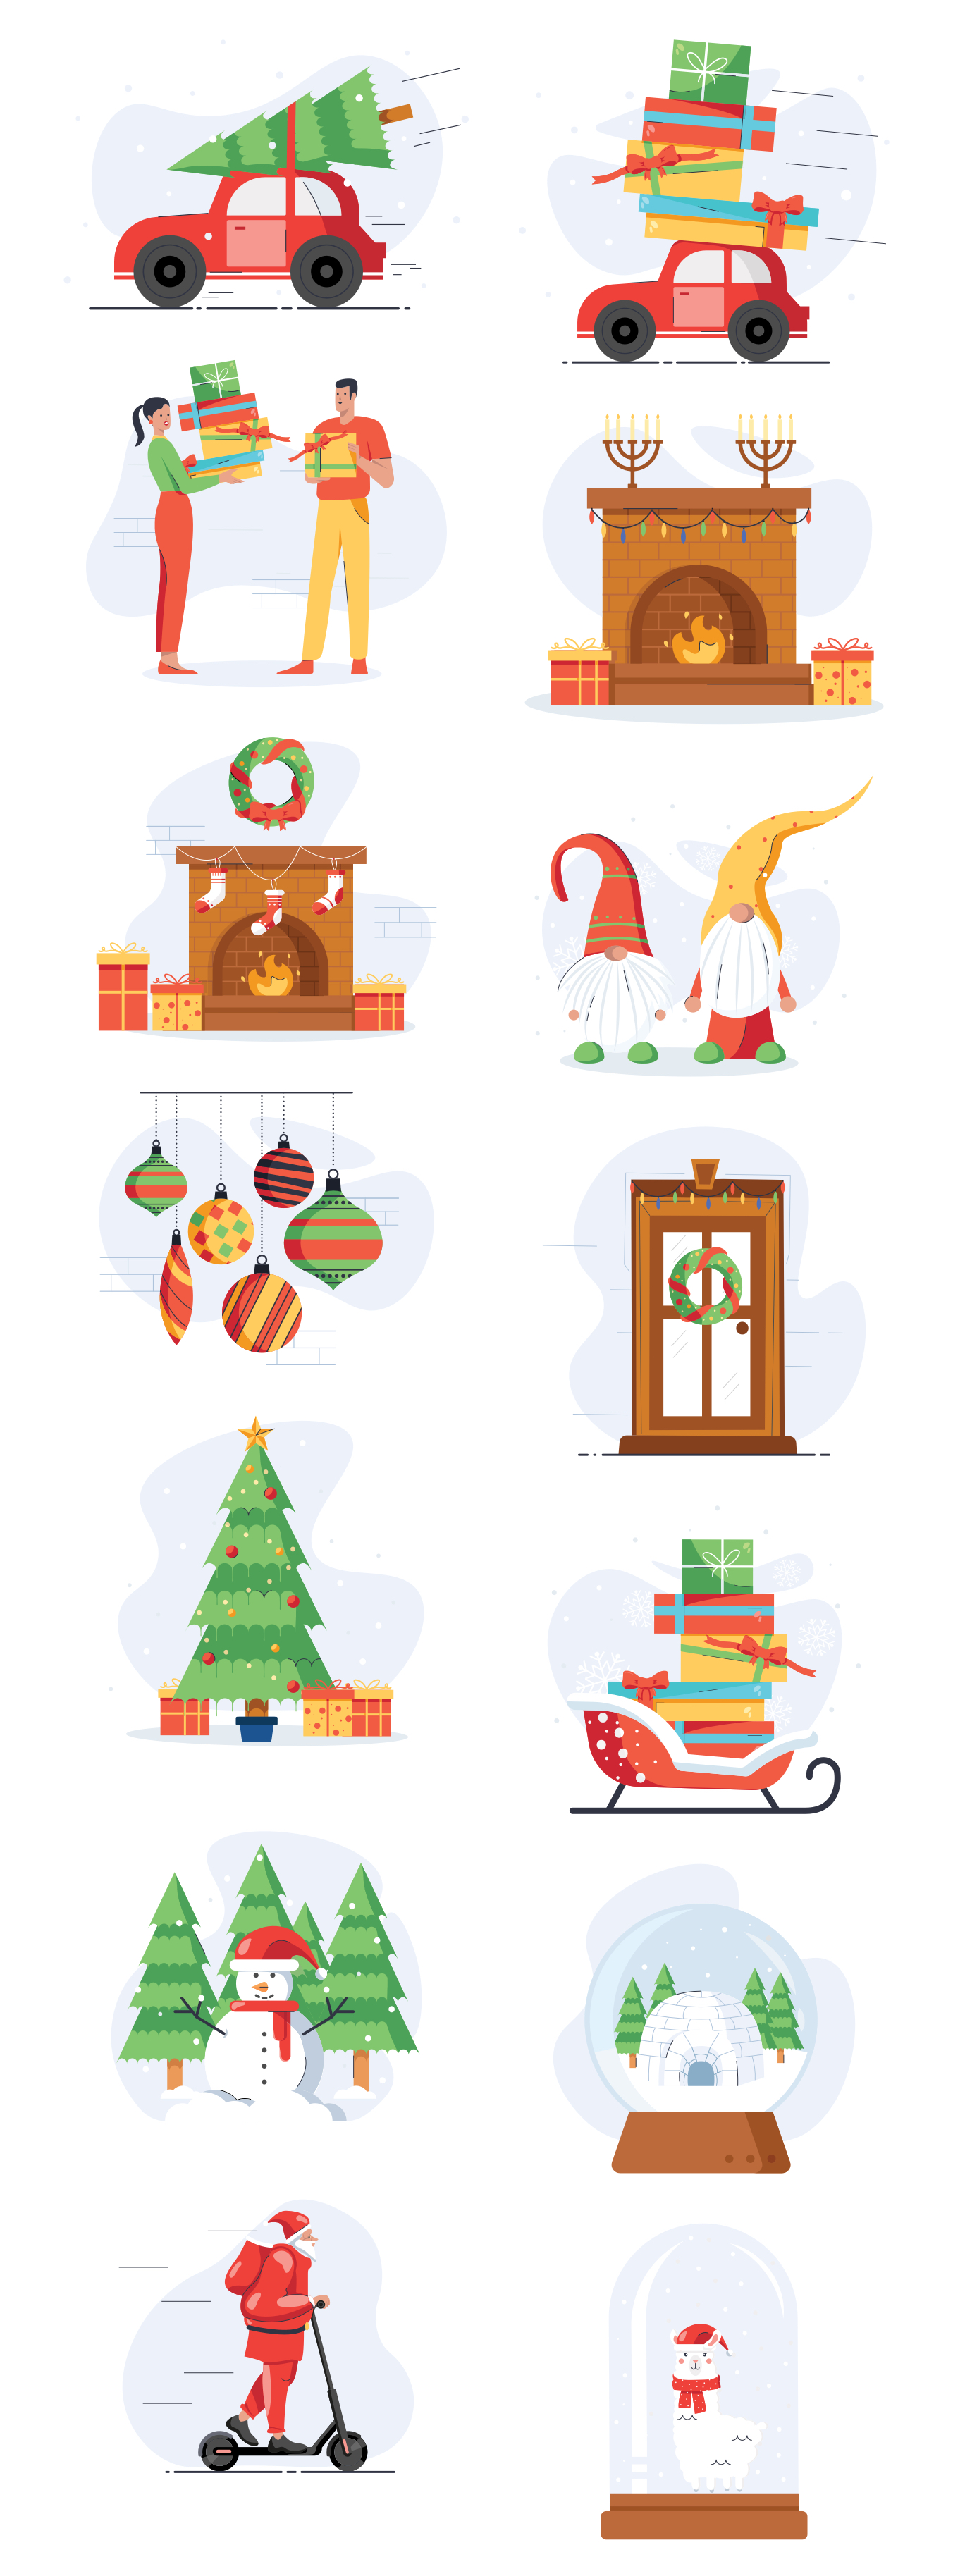 14张圣诞节相关插画包 14 Christmas illustration bag-酷社 (KUSHEW)